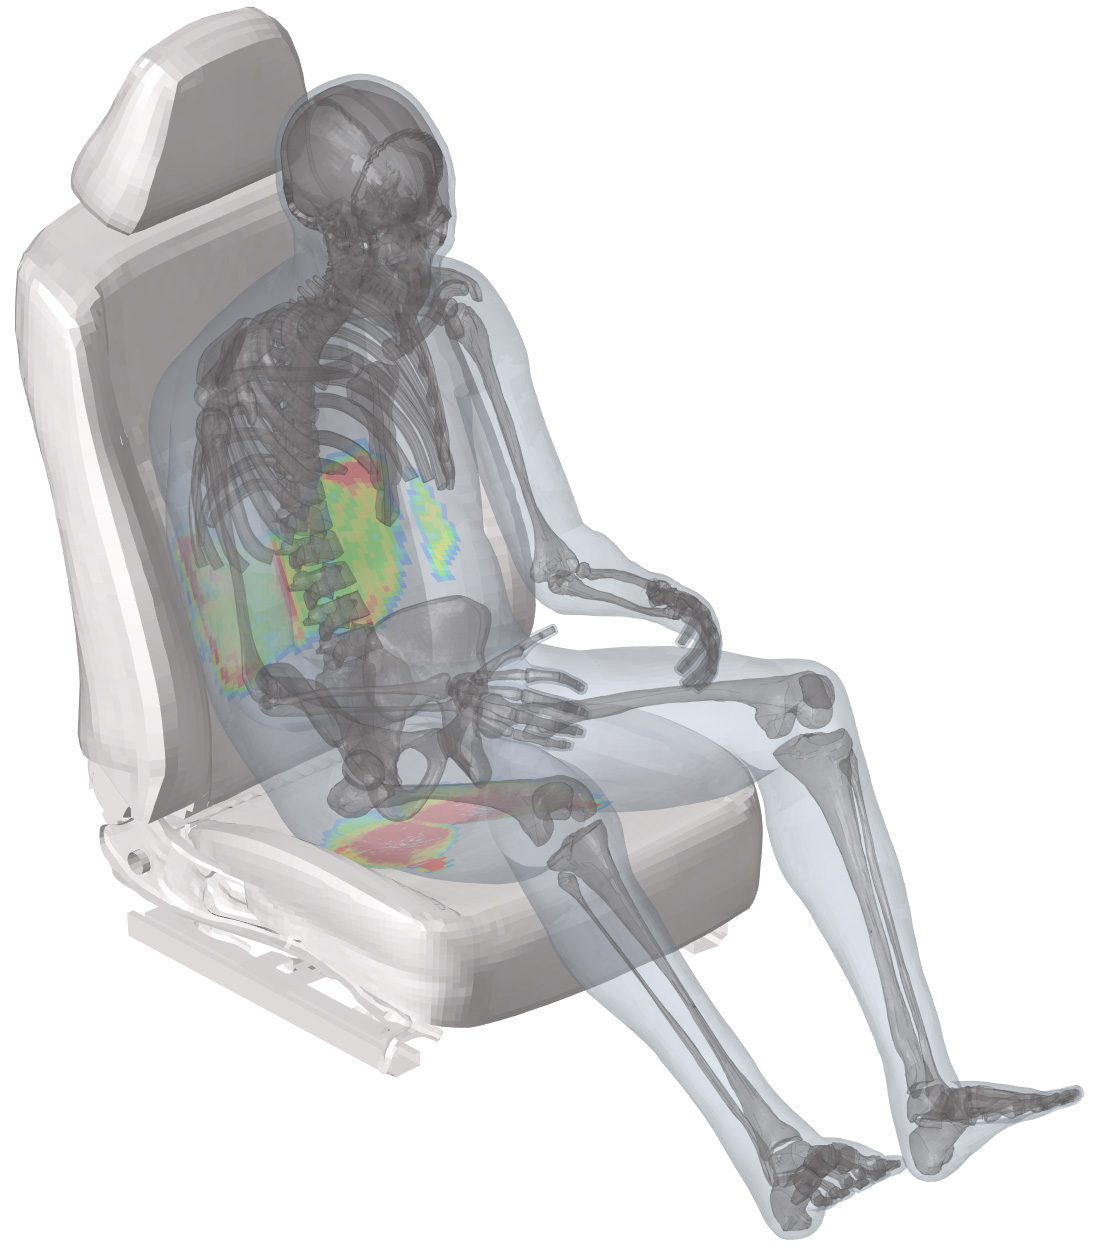 EMMA bone model on a car seat